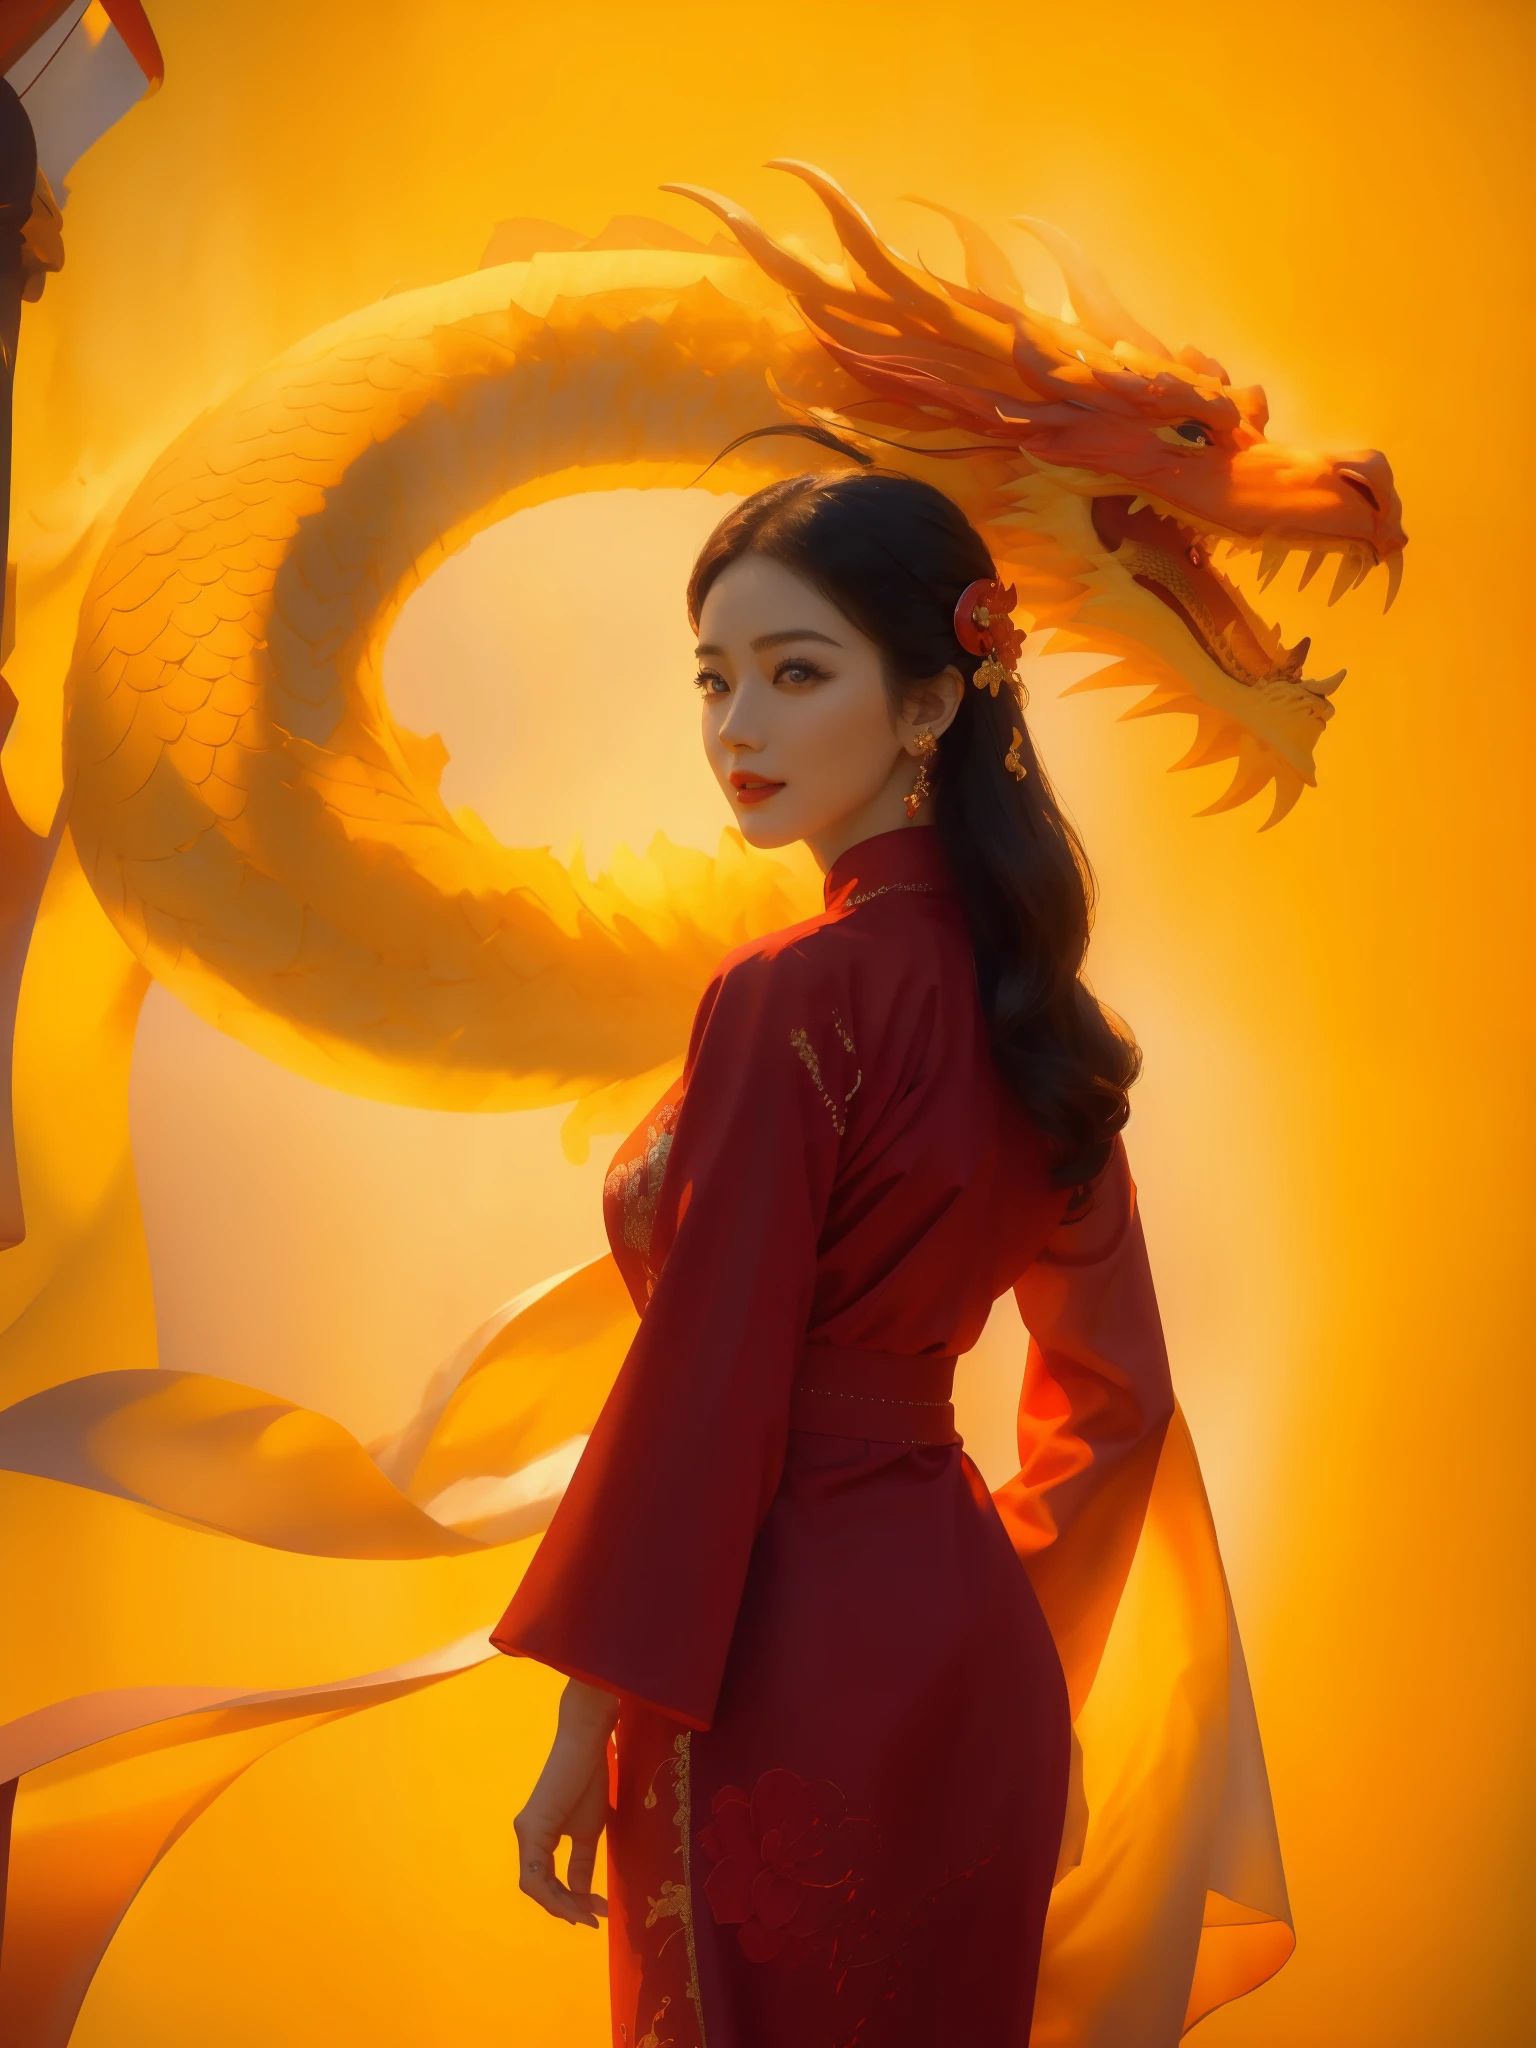 uma mulher com um vestido AO DAI com um DRAGÃO vermelho ATRÁS, roupas tradicionais vietnamitas, como um pôster , realista , Super Detalhe, (melhor qualidade,4K,8K,alta resolução,obra de arte:1.2),Ultra-detalhado,(realista,photorealista,photo-realista:1.37),fundo vermelho e profissionalismo, o contraste entre o fundo amarelo e o logotipo vermelho cria uma composição visualmente cativante, o pano de fundo amarelo simboliza calor, positividade, e energia, enquanto o logotipo vermelho representa poder, paixão, e criatividade, a cor vibrante do logotipo se destaca no fundo amarelo, criando um impacto visual dinâmico, o equilíbrio perfeito entre as duas cores atrai o espectador e deixa uma impressão duradoura, A iluminação é suave e uniforme, iluminando o 